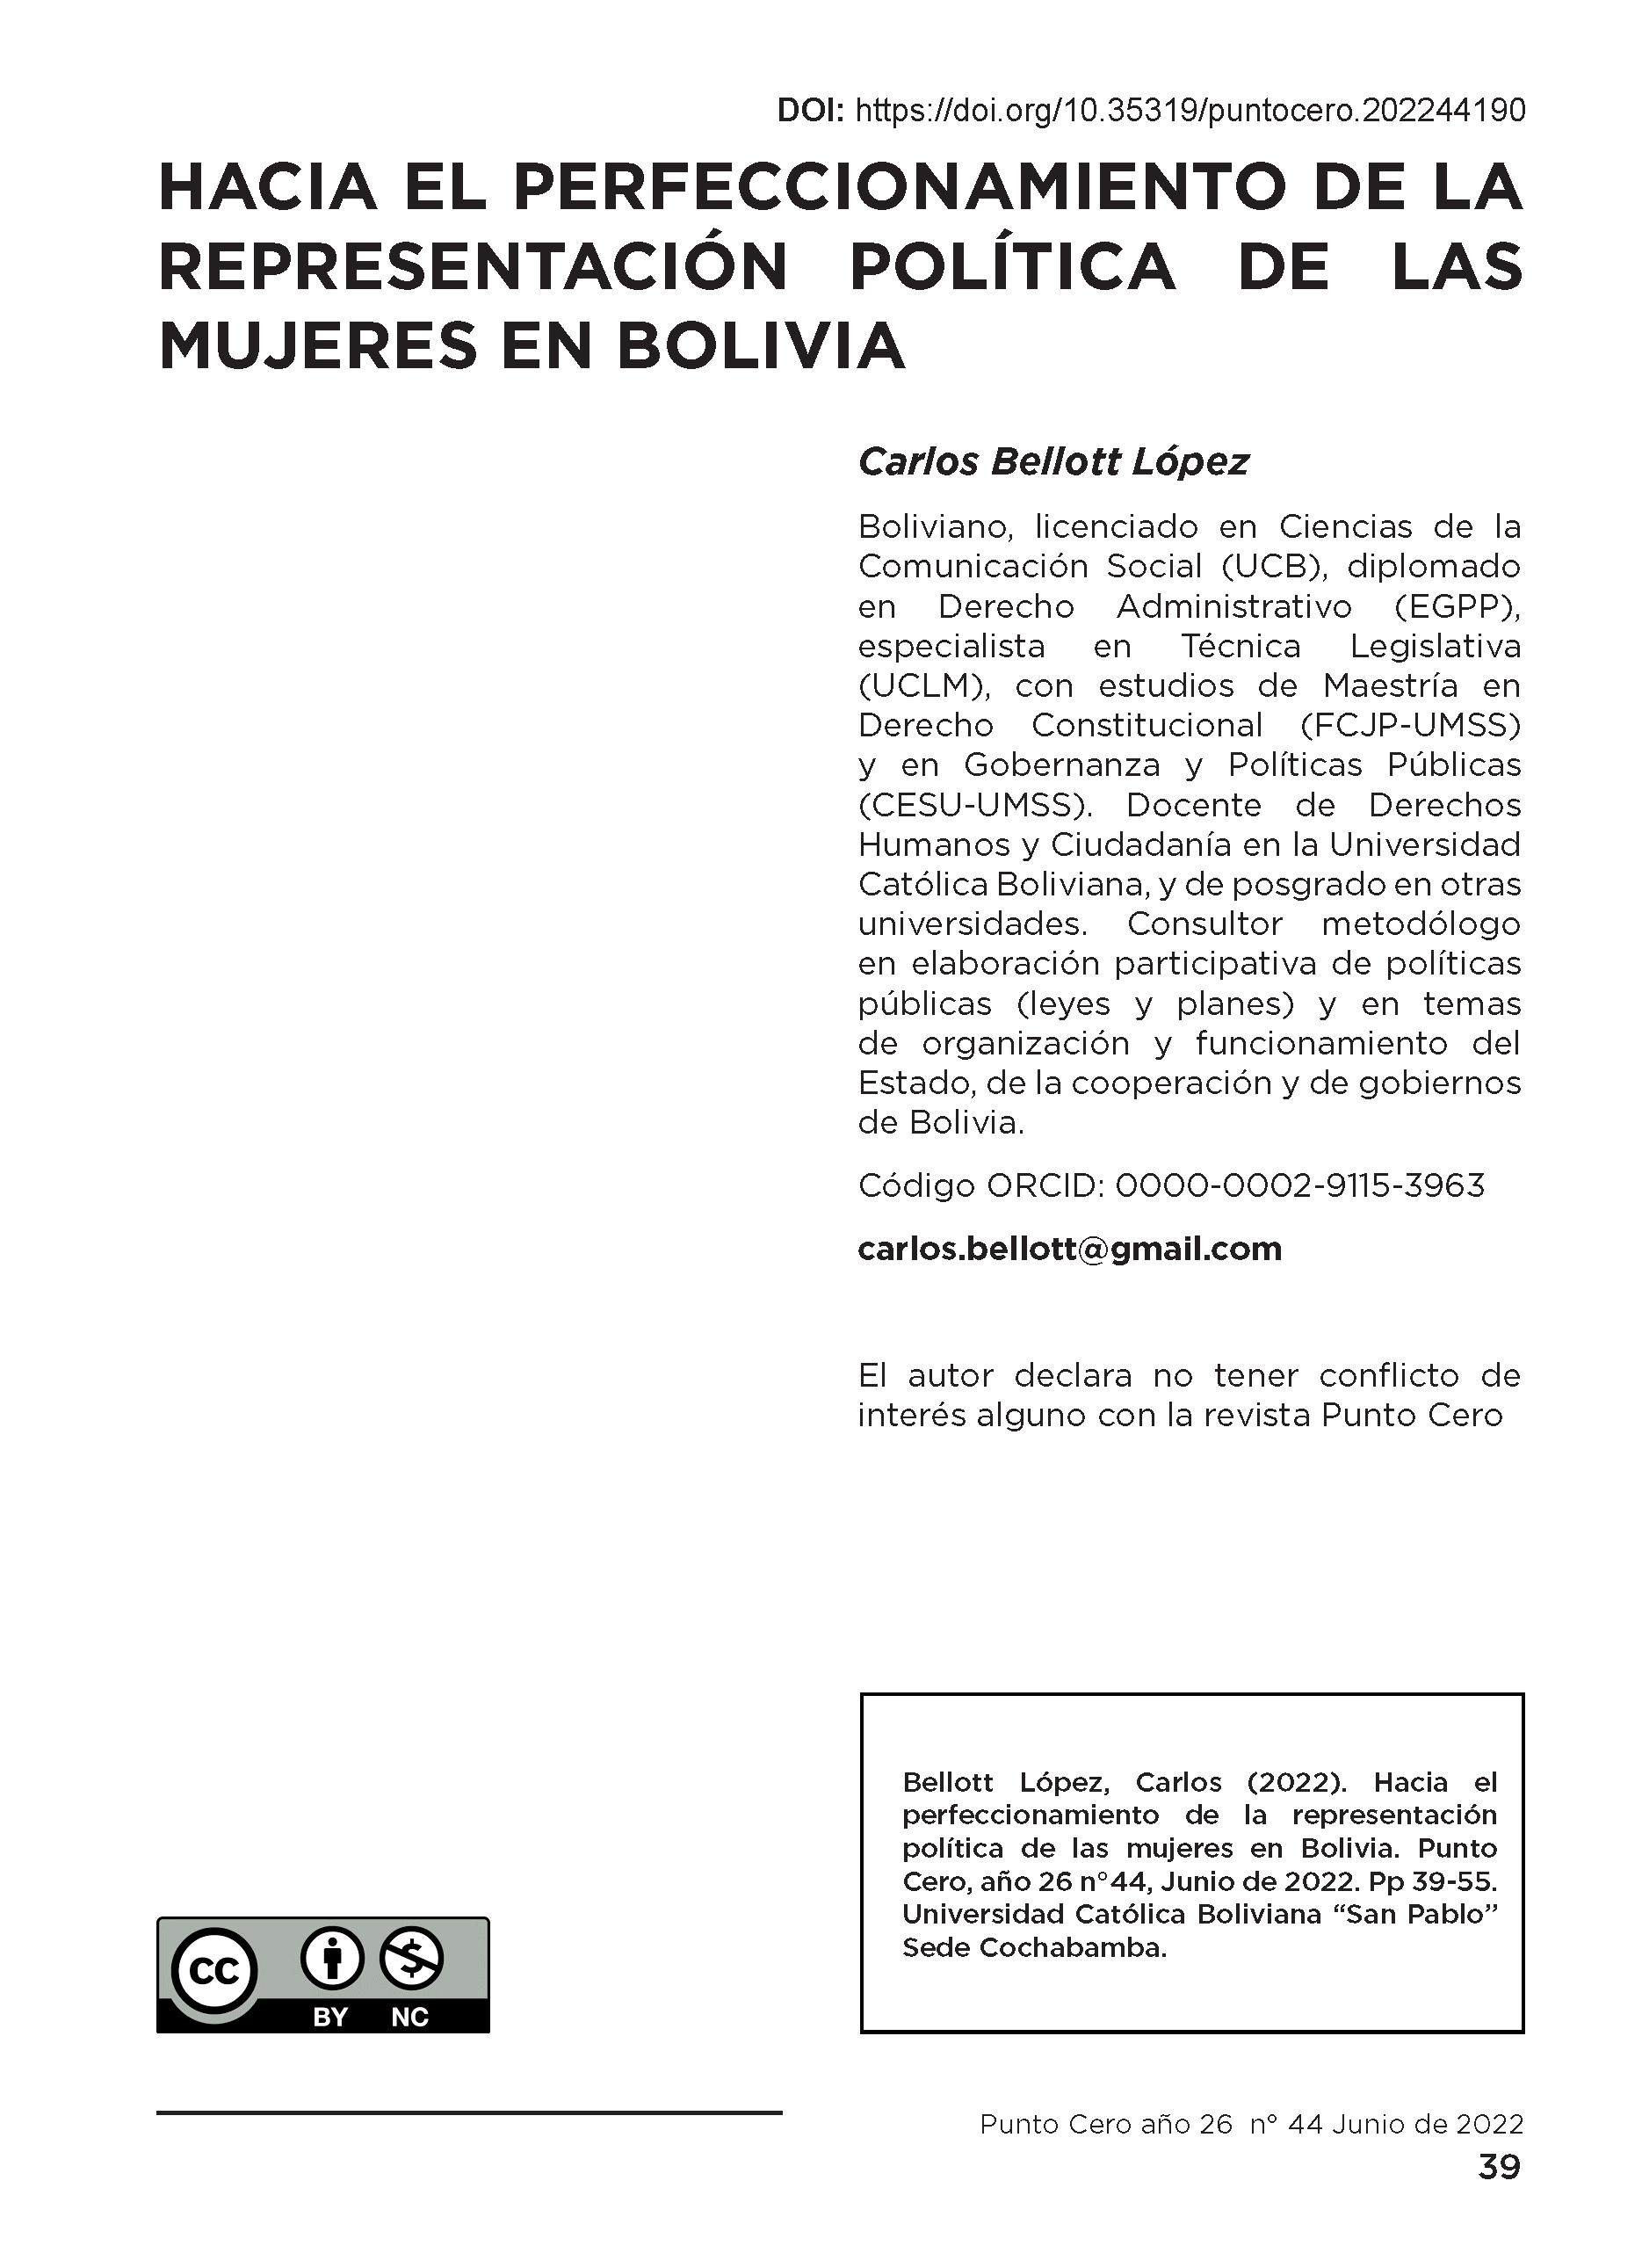 Hacia el perfeccionamiento de la representación política de las mujeres en Bolivia